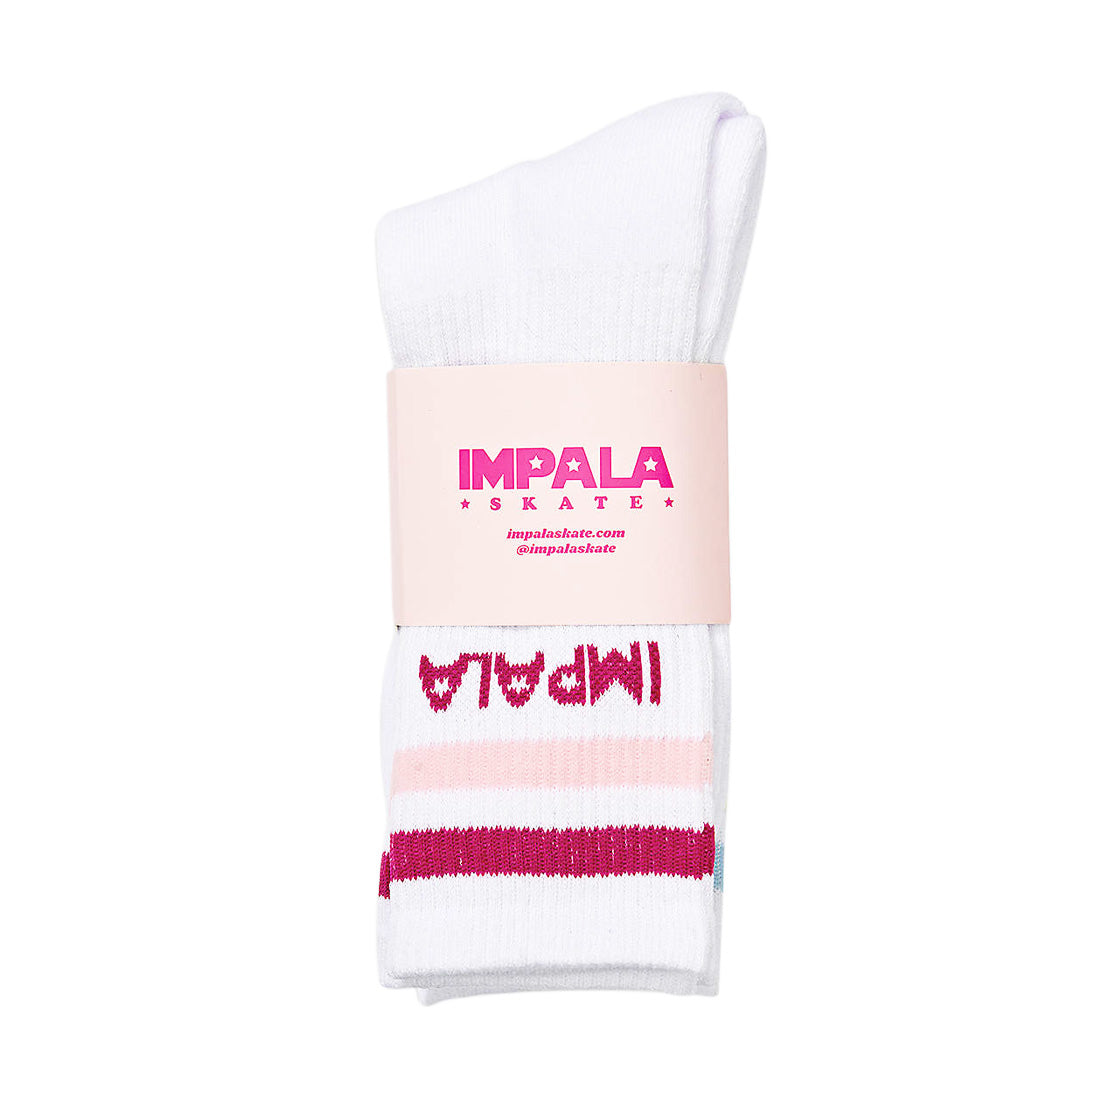 Impala Skate Crew Socks 3pk - Pastel Stripe Apparel Socks